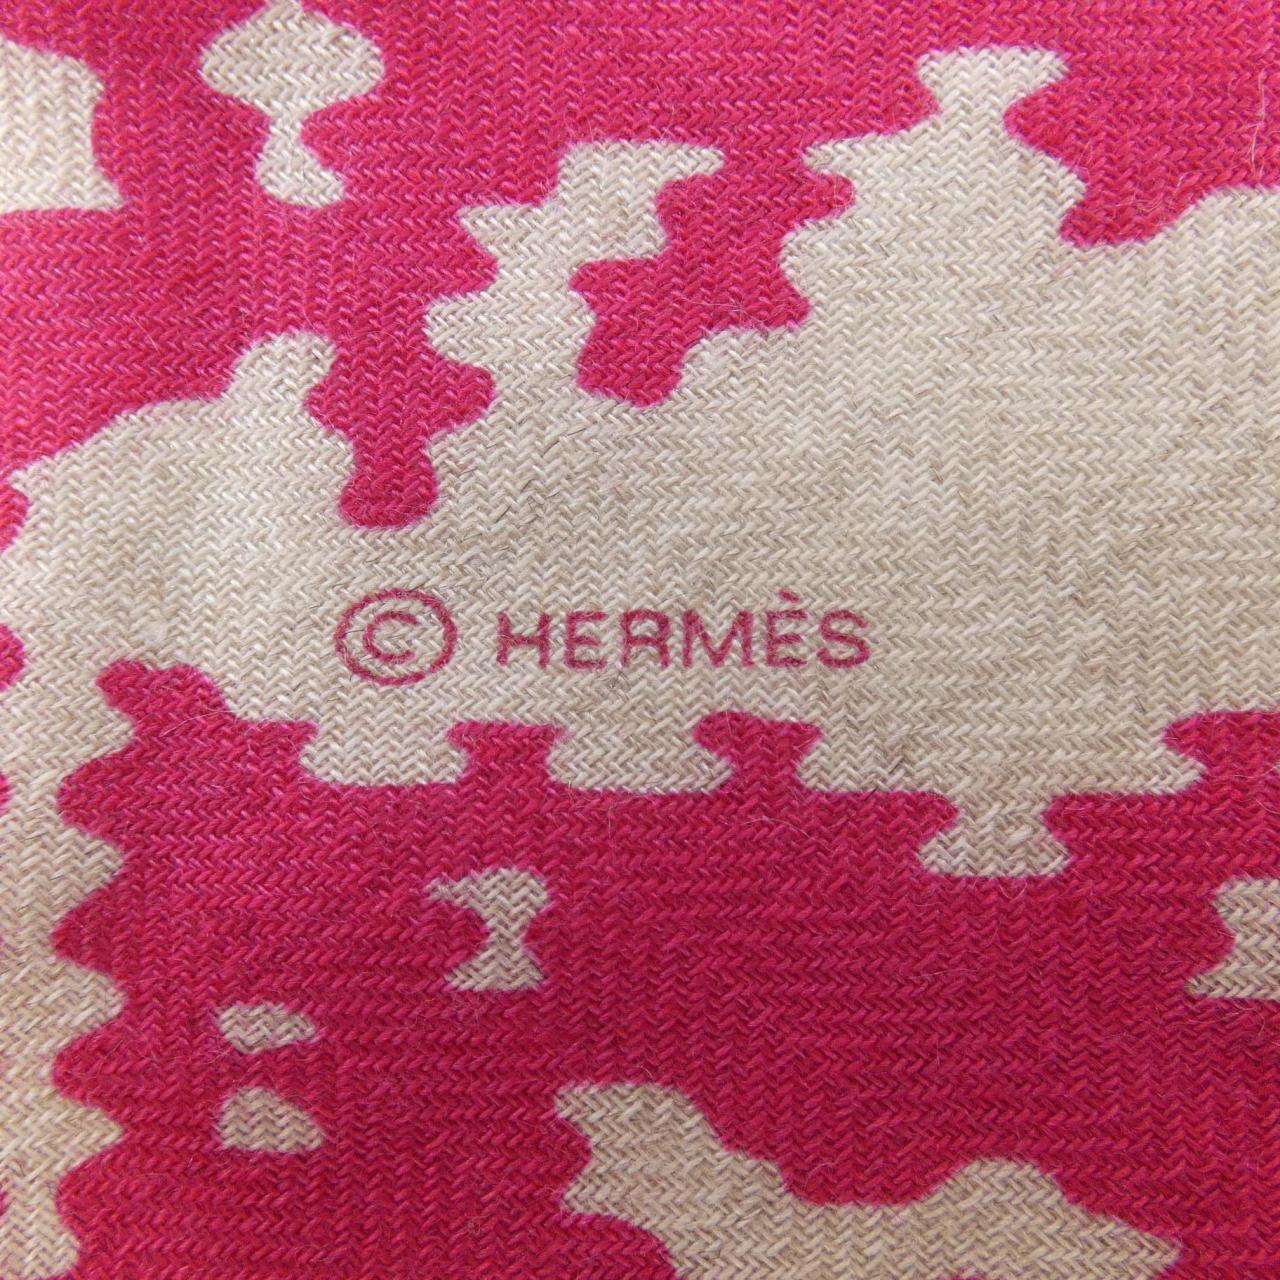 HERMES专卖店